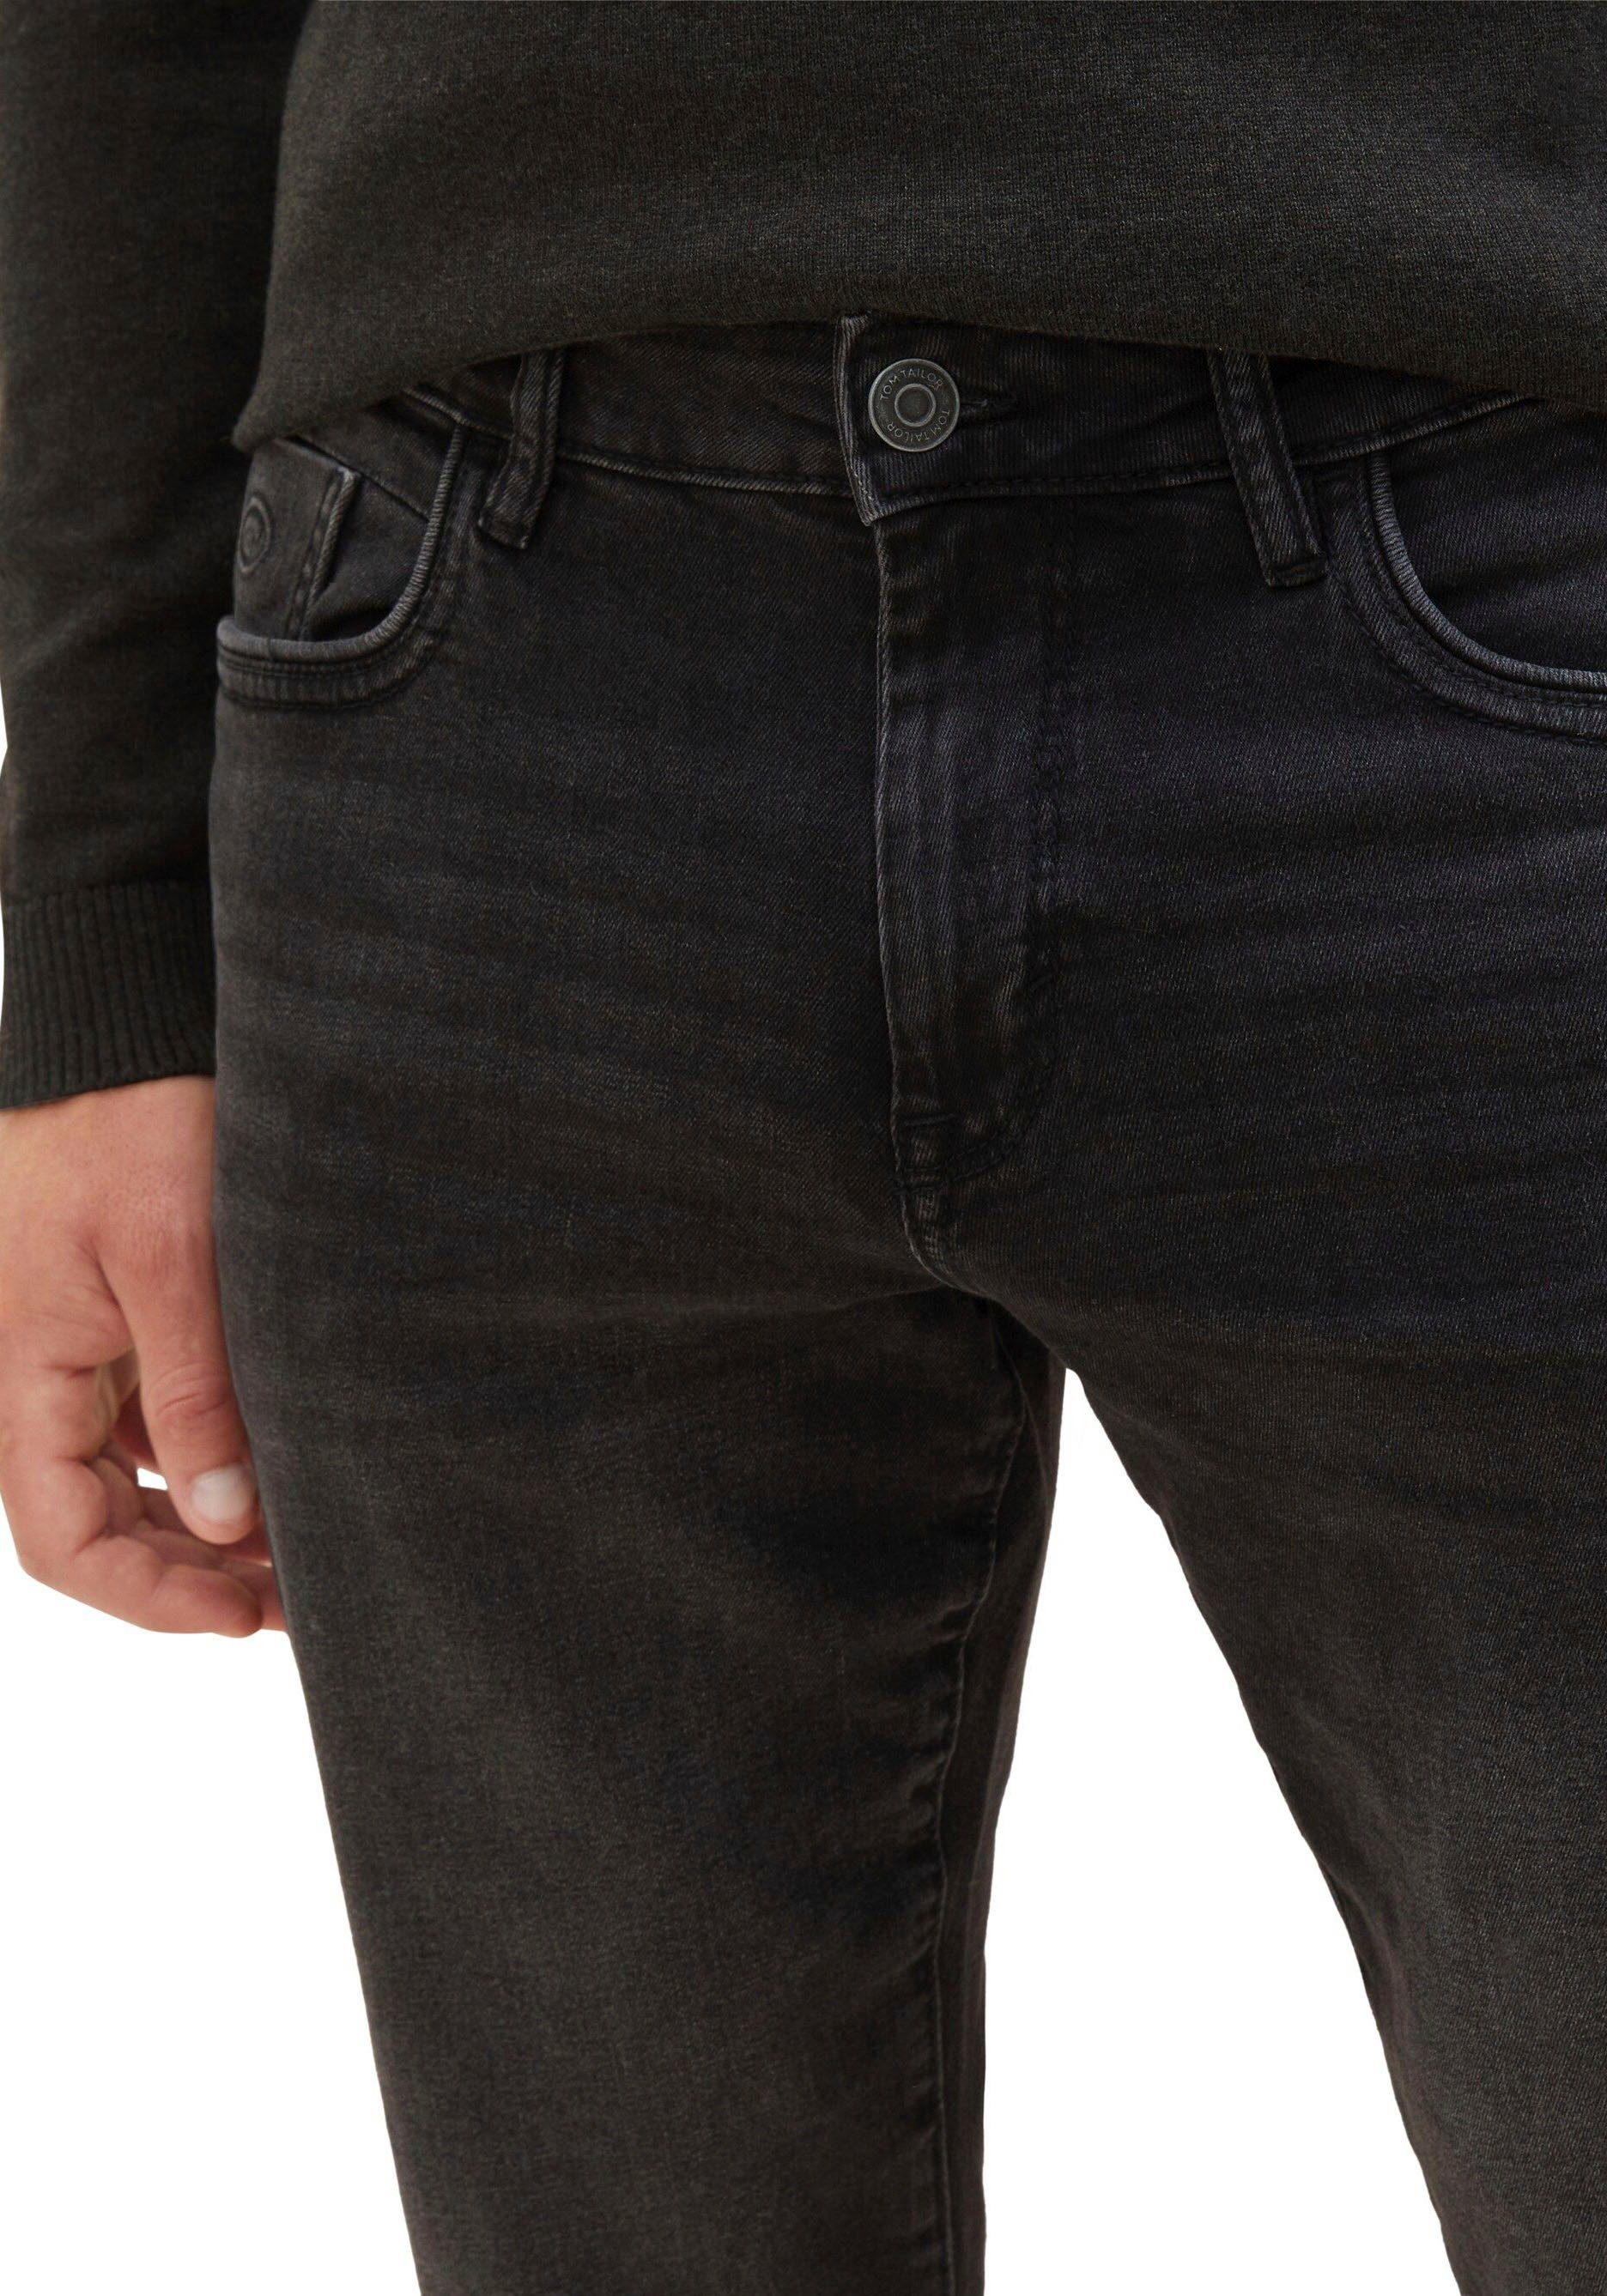 Josh TOM dark TAILOR mit 5-Pocket-Jeans Reißverschluss used